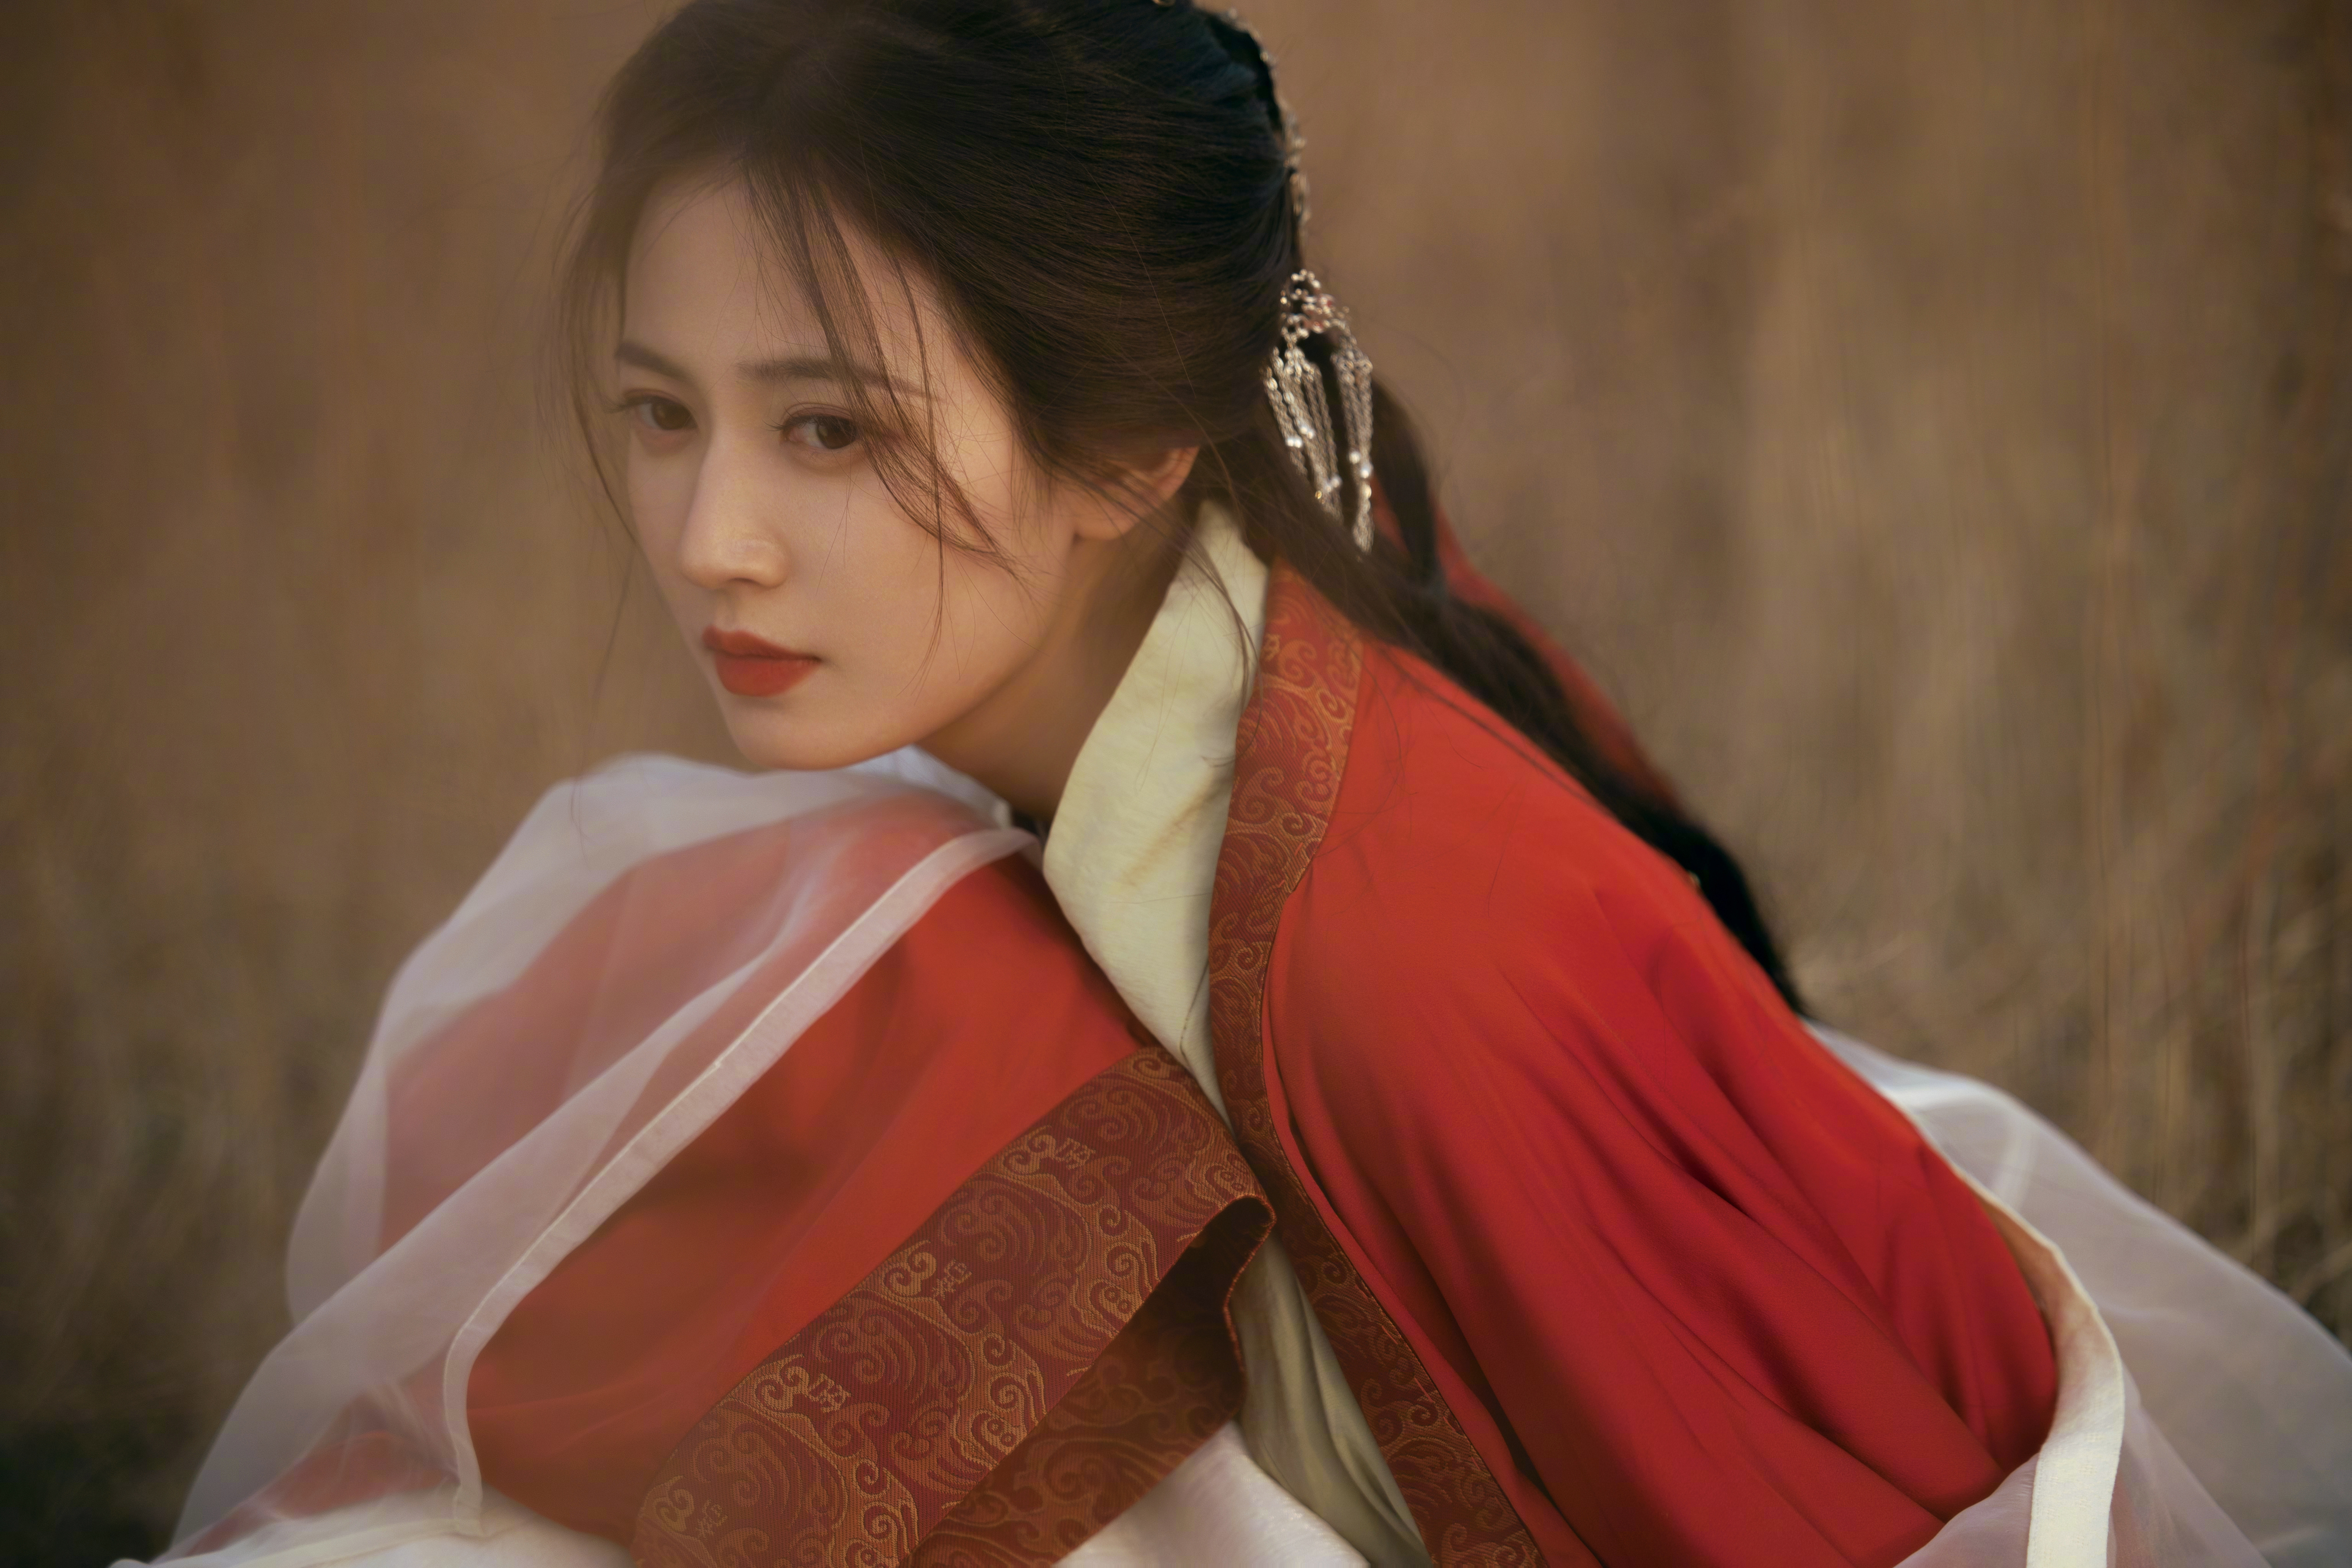 People 5472x3648 Asian women actress hanfu long hair dark hair red lipstick